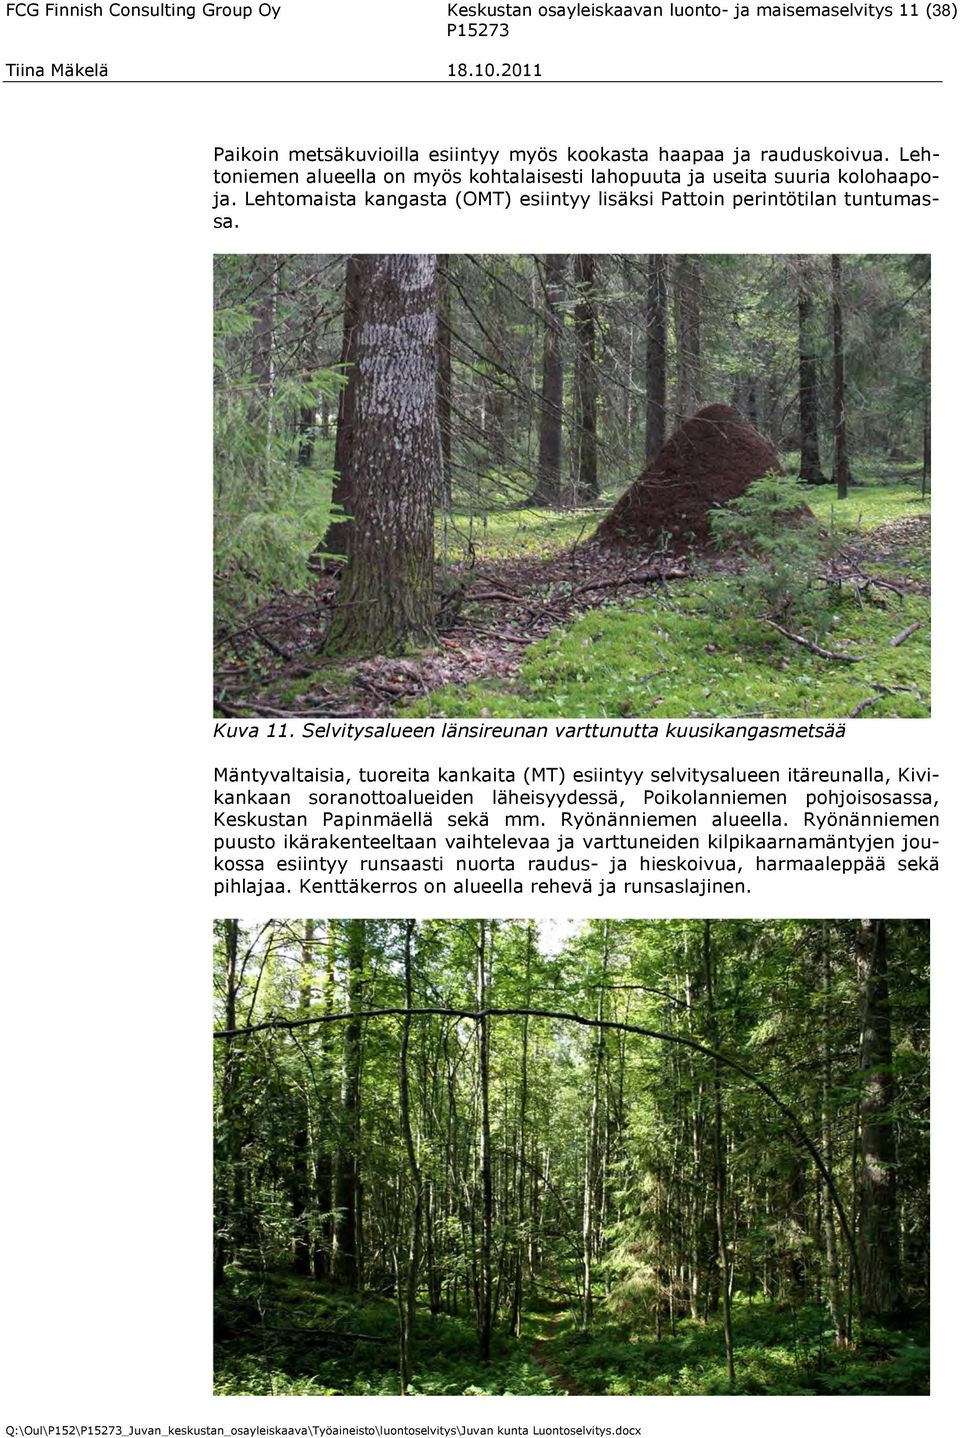 Selvitysalueen länsireunan varttunutta kuusikangasmetsää Mäntyvaltaisia, tuoreita kankaita (MT) esiintyy selvitysalueen itäreunalla, Kivikankaan soranottoalueiden läheisyydessä, Poikolanniemen